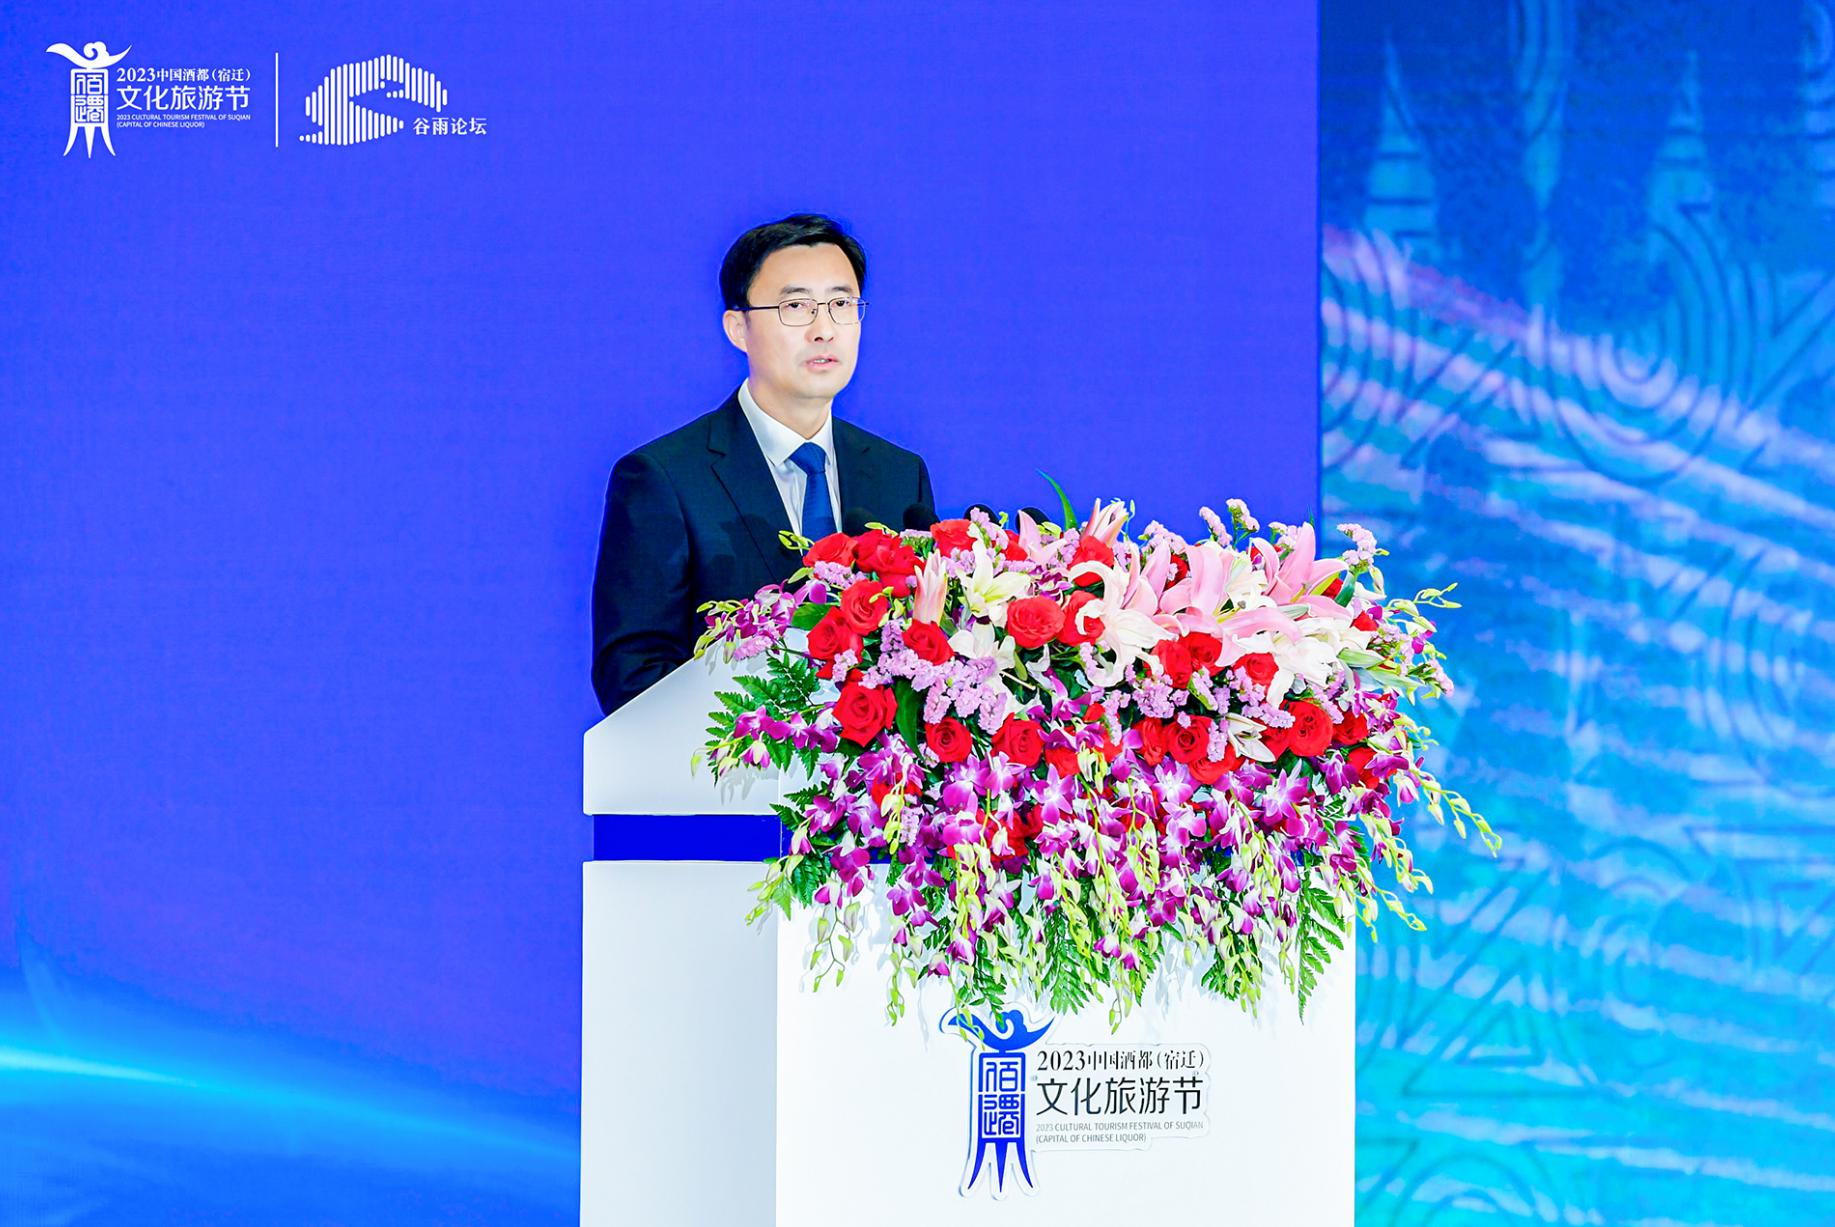 张联东出席谷雨论坛并发表主题演讲： 再筑中国文化与世界交汇的梦想之路